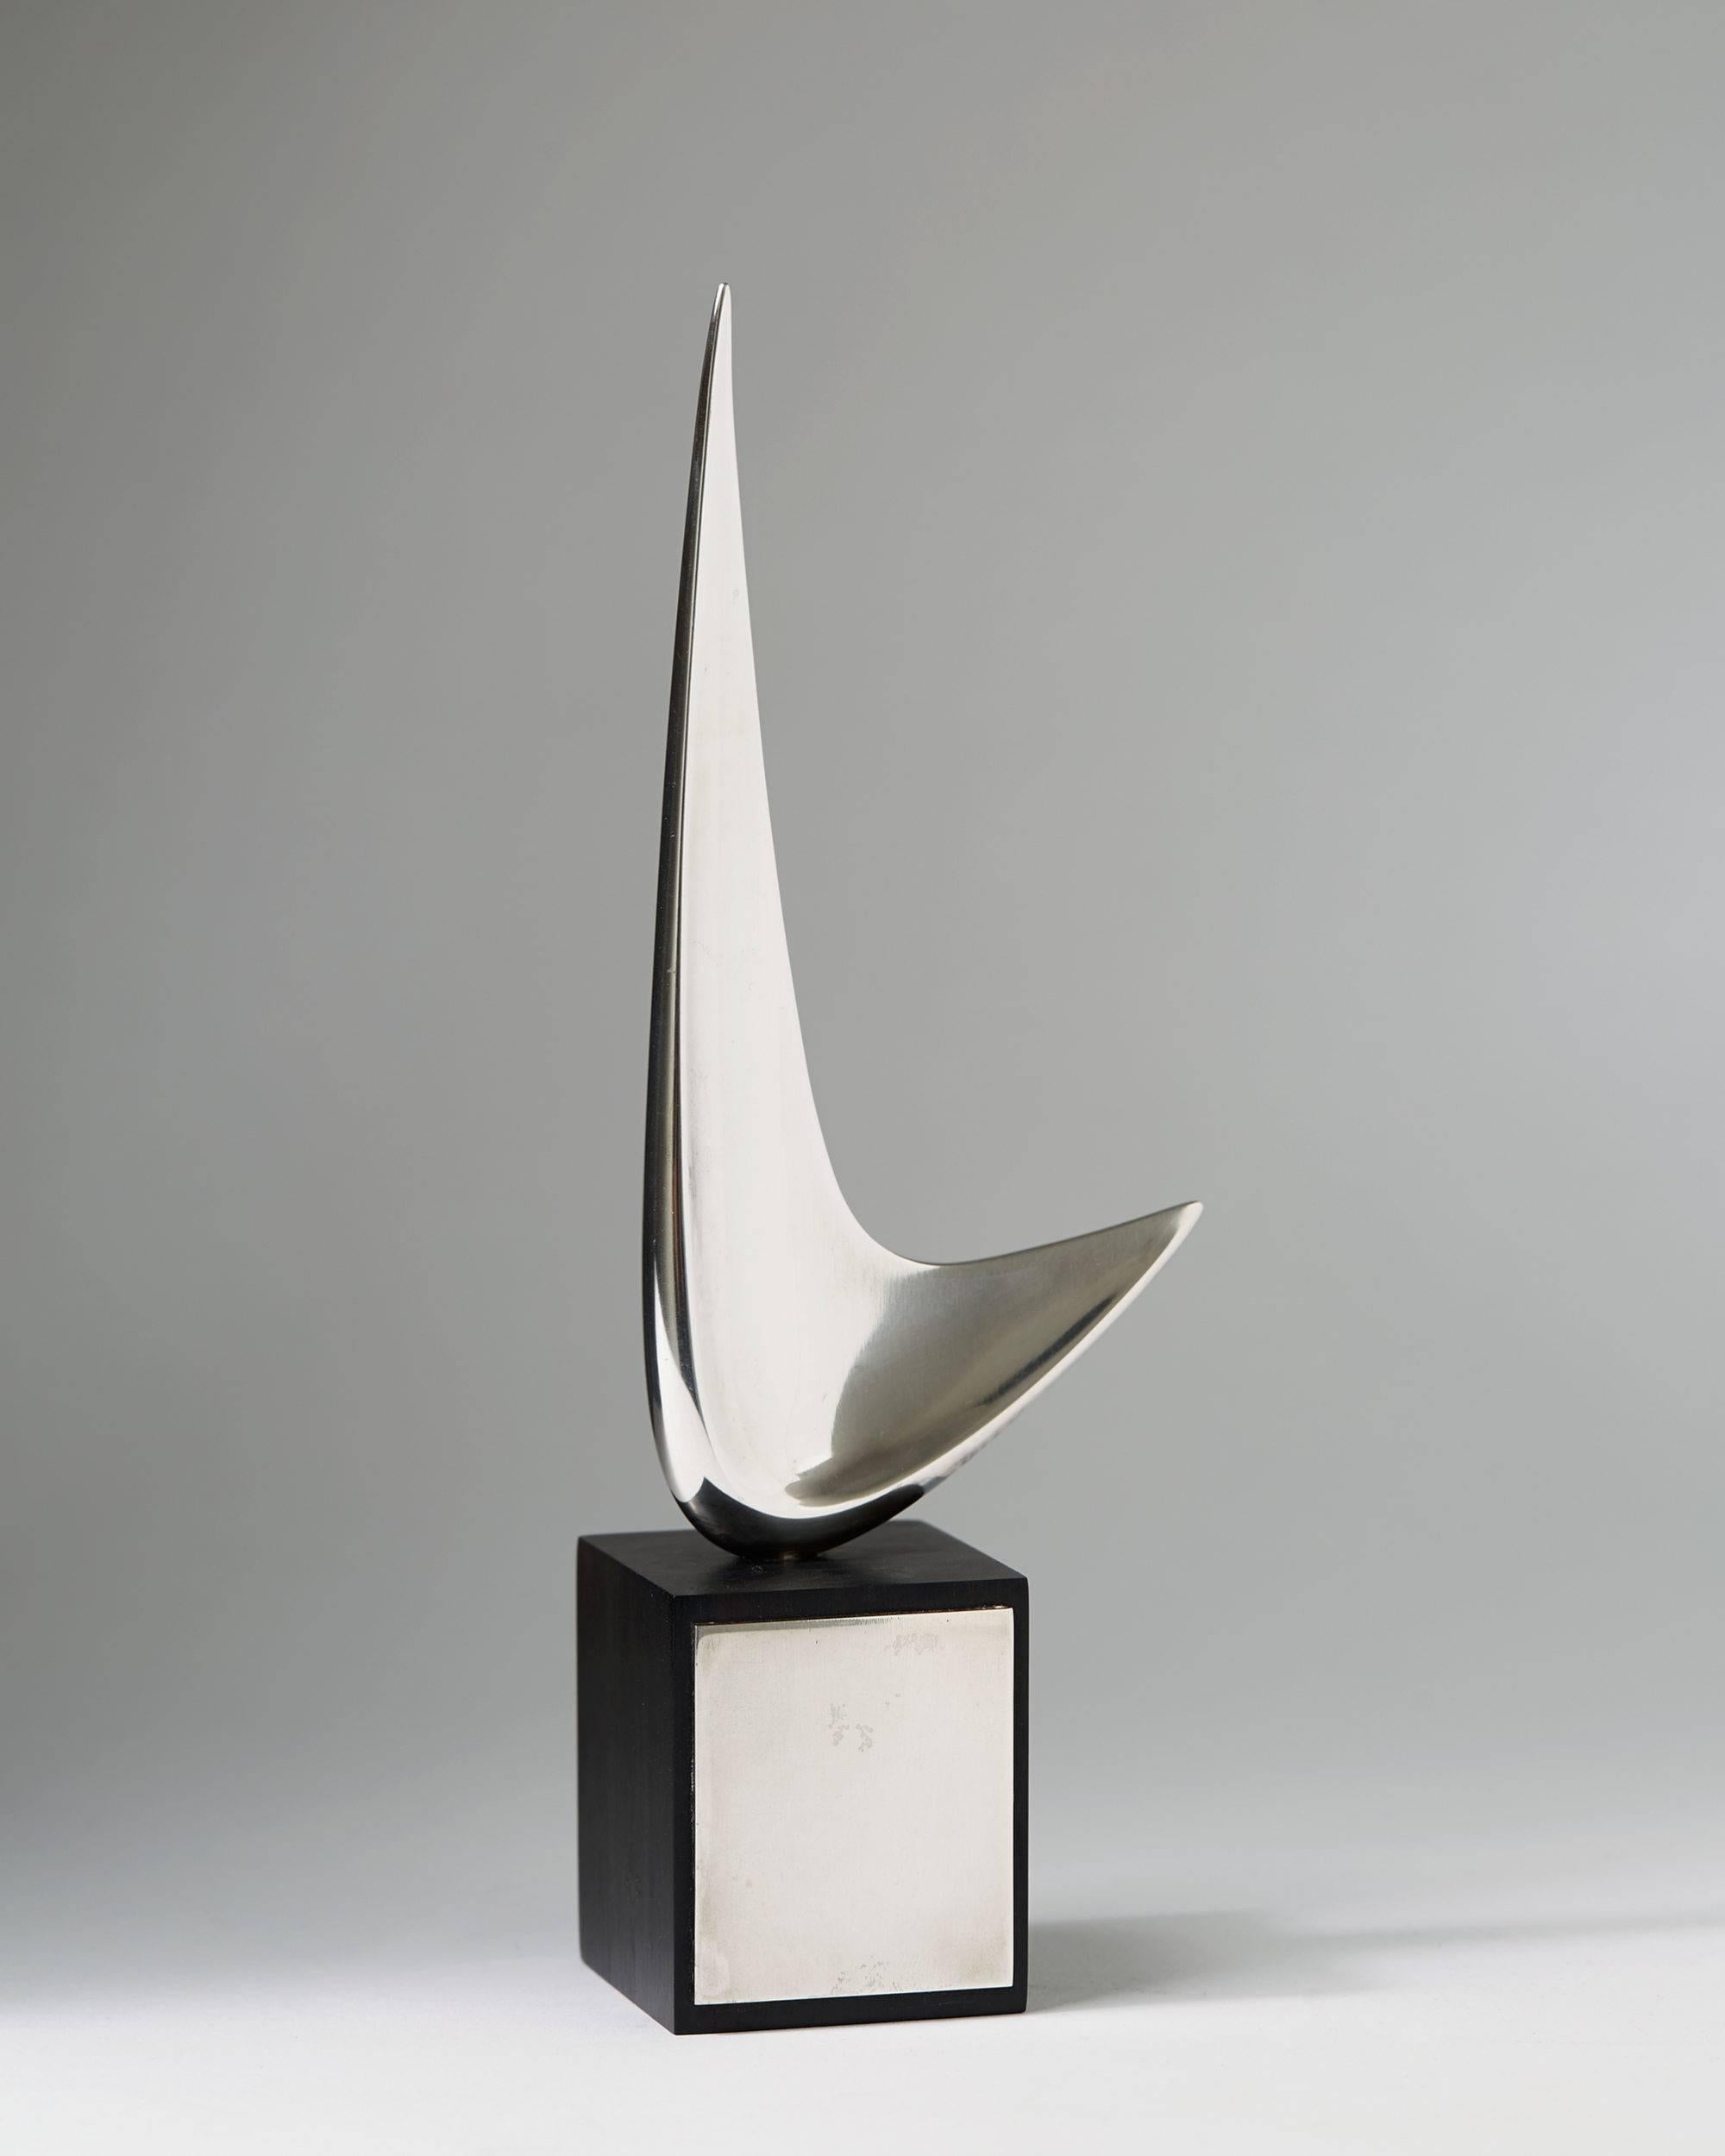 Skulptur, entworfen von Henning Koppel für Georg Jensen,
Dänemark. 1960s.

Sterlingsilber und Ebenholz.

Abmessungen: 
H: 21 cm/ 8 1/4''